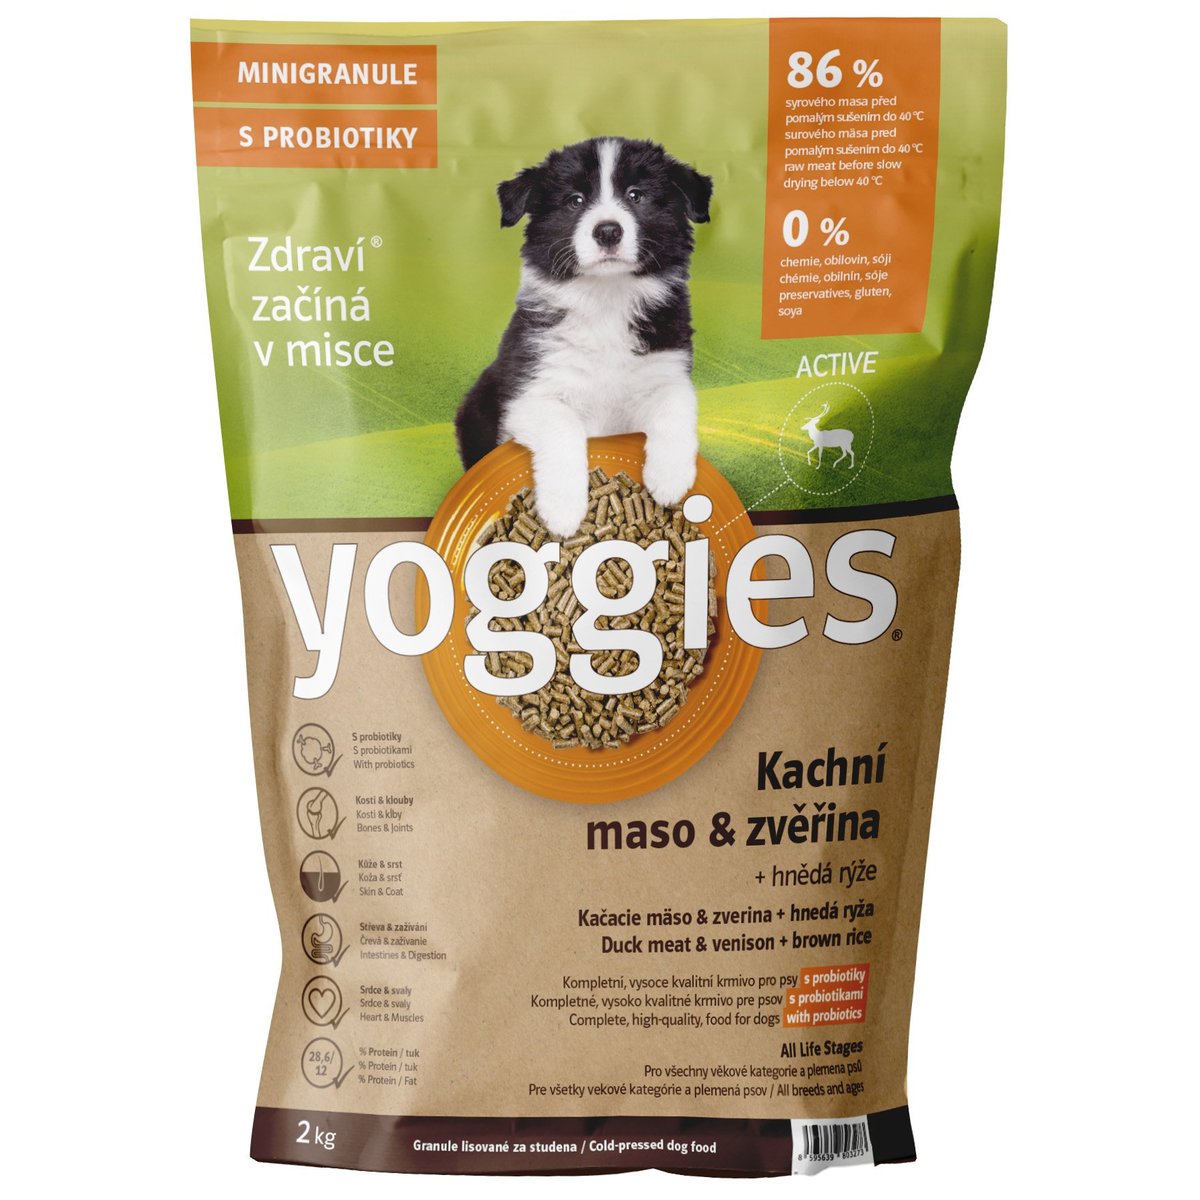 Yoggies Active Kachní maso a zvěřina – minigranule s laktobacily pro psy